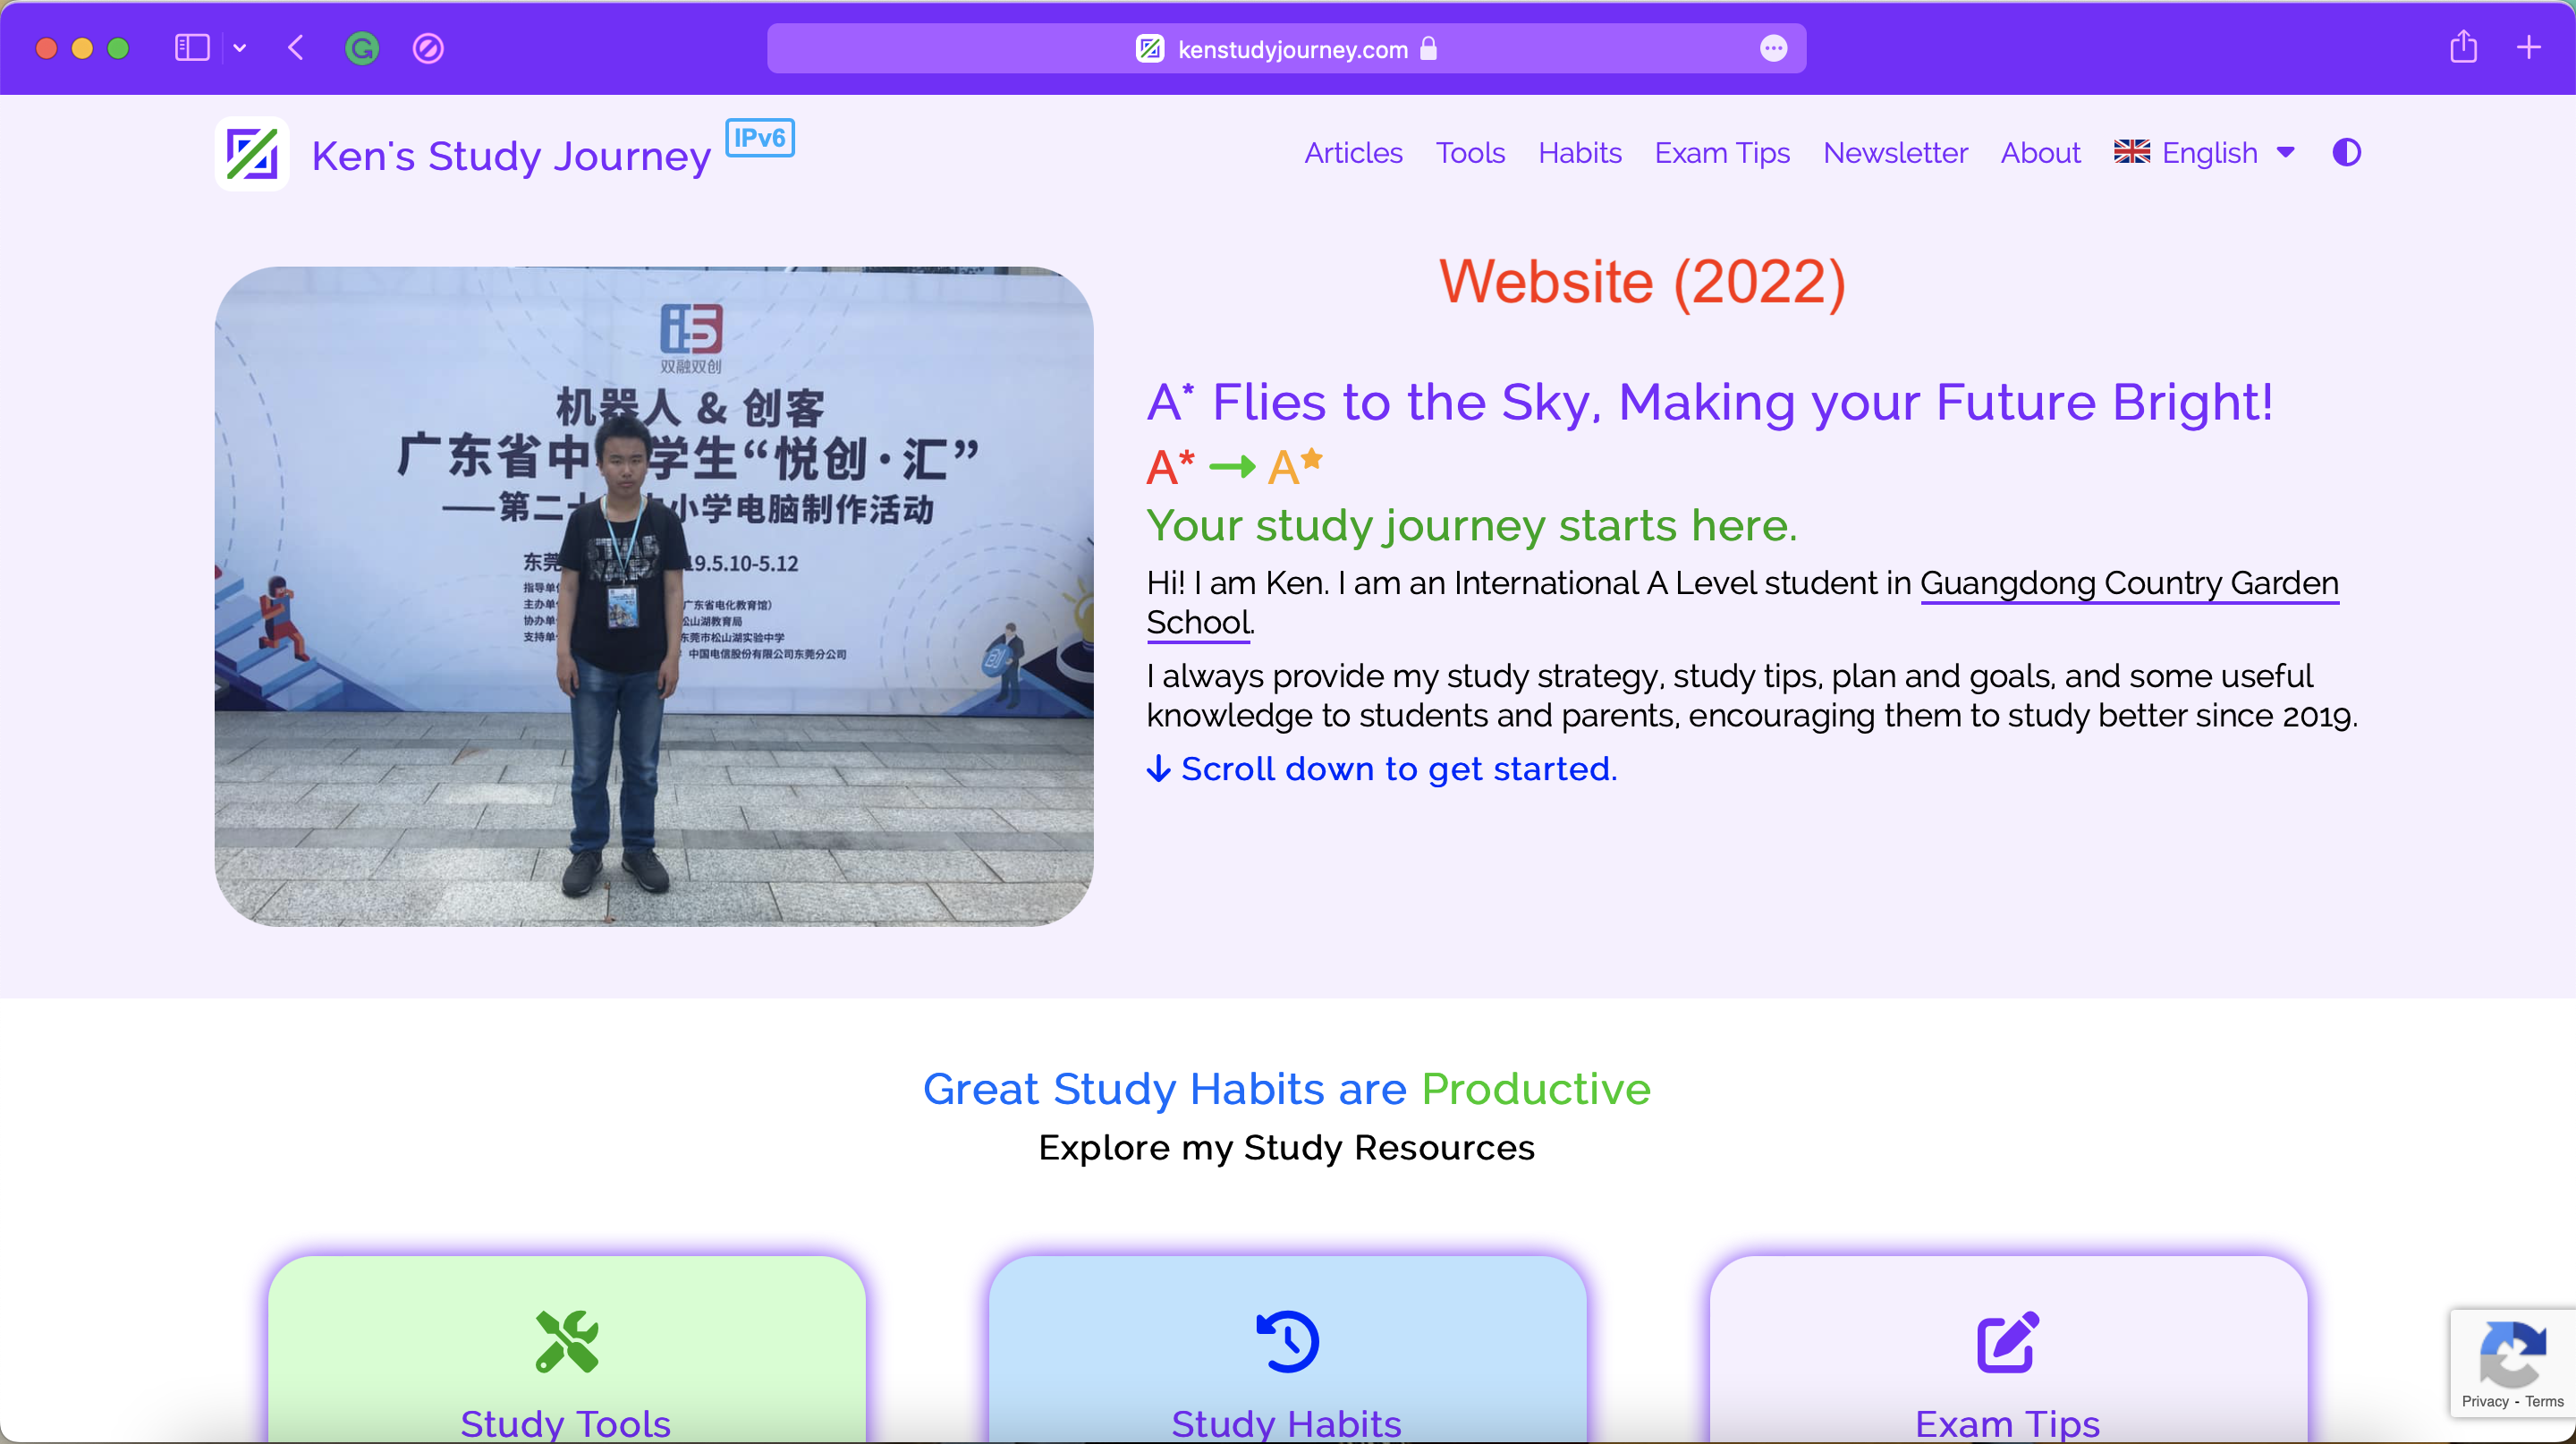 Ken's Study Journey Website (2022)